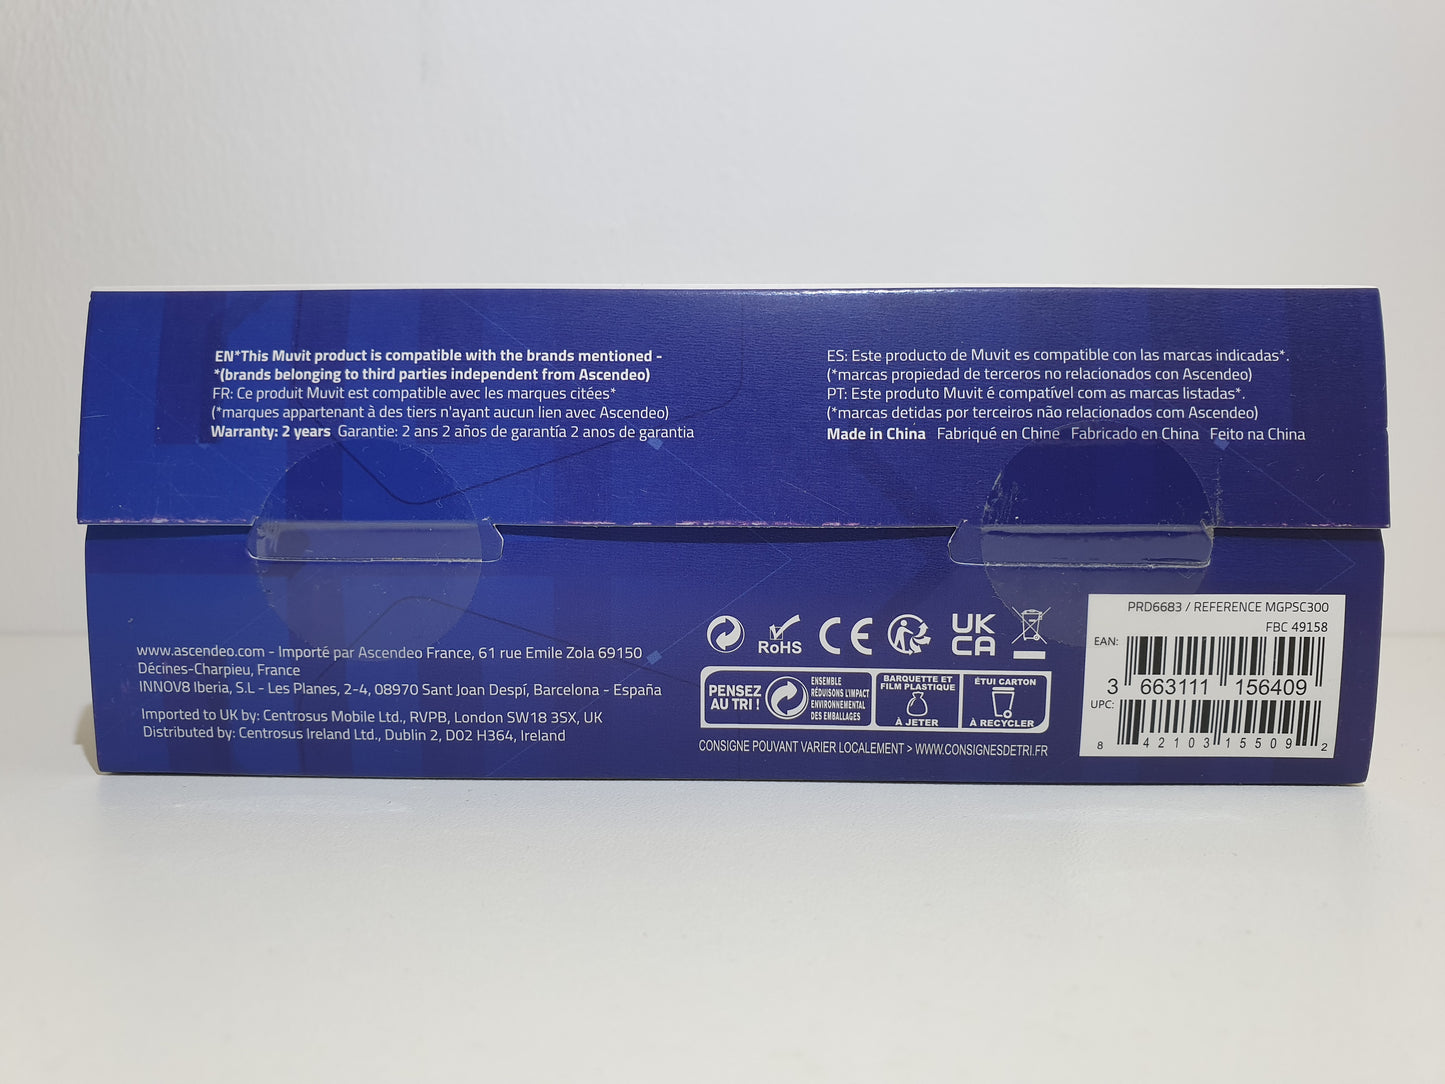 Manette Sans Fil - muvit PSC300 - pour PS4, PS3 ou PC - Neuf scellé